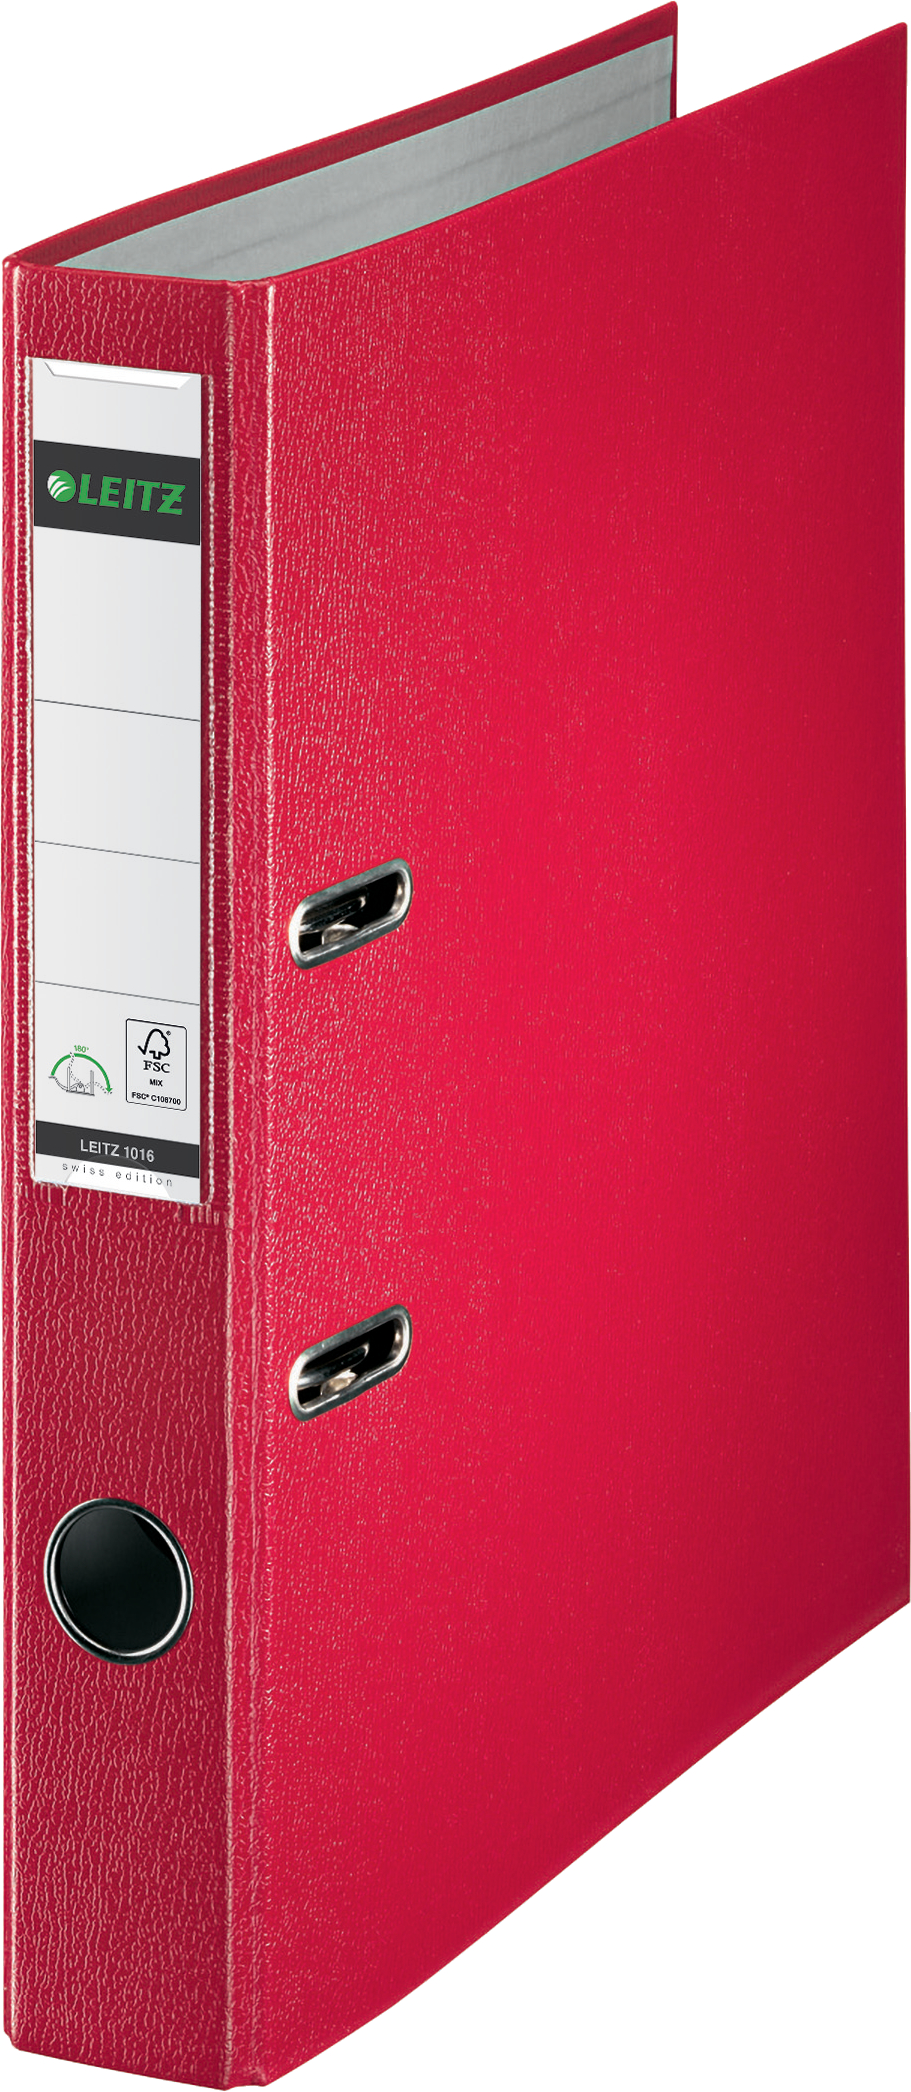 LEITZ Classeur Swiss Ed. 5.2cm 10165025 rouge A4